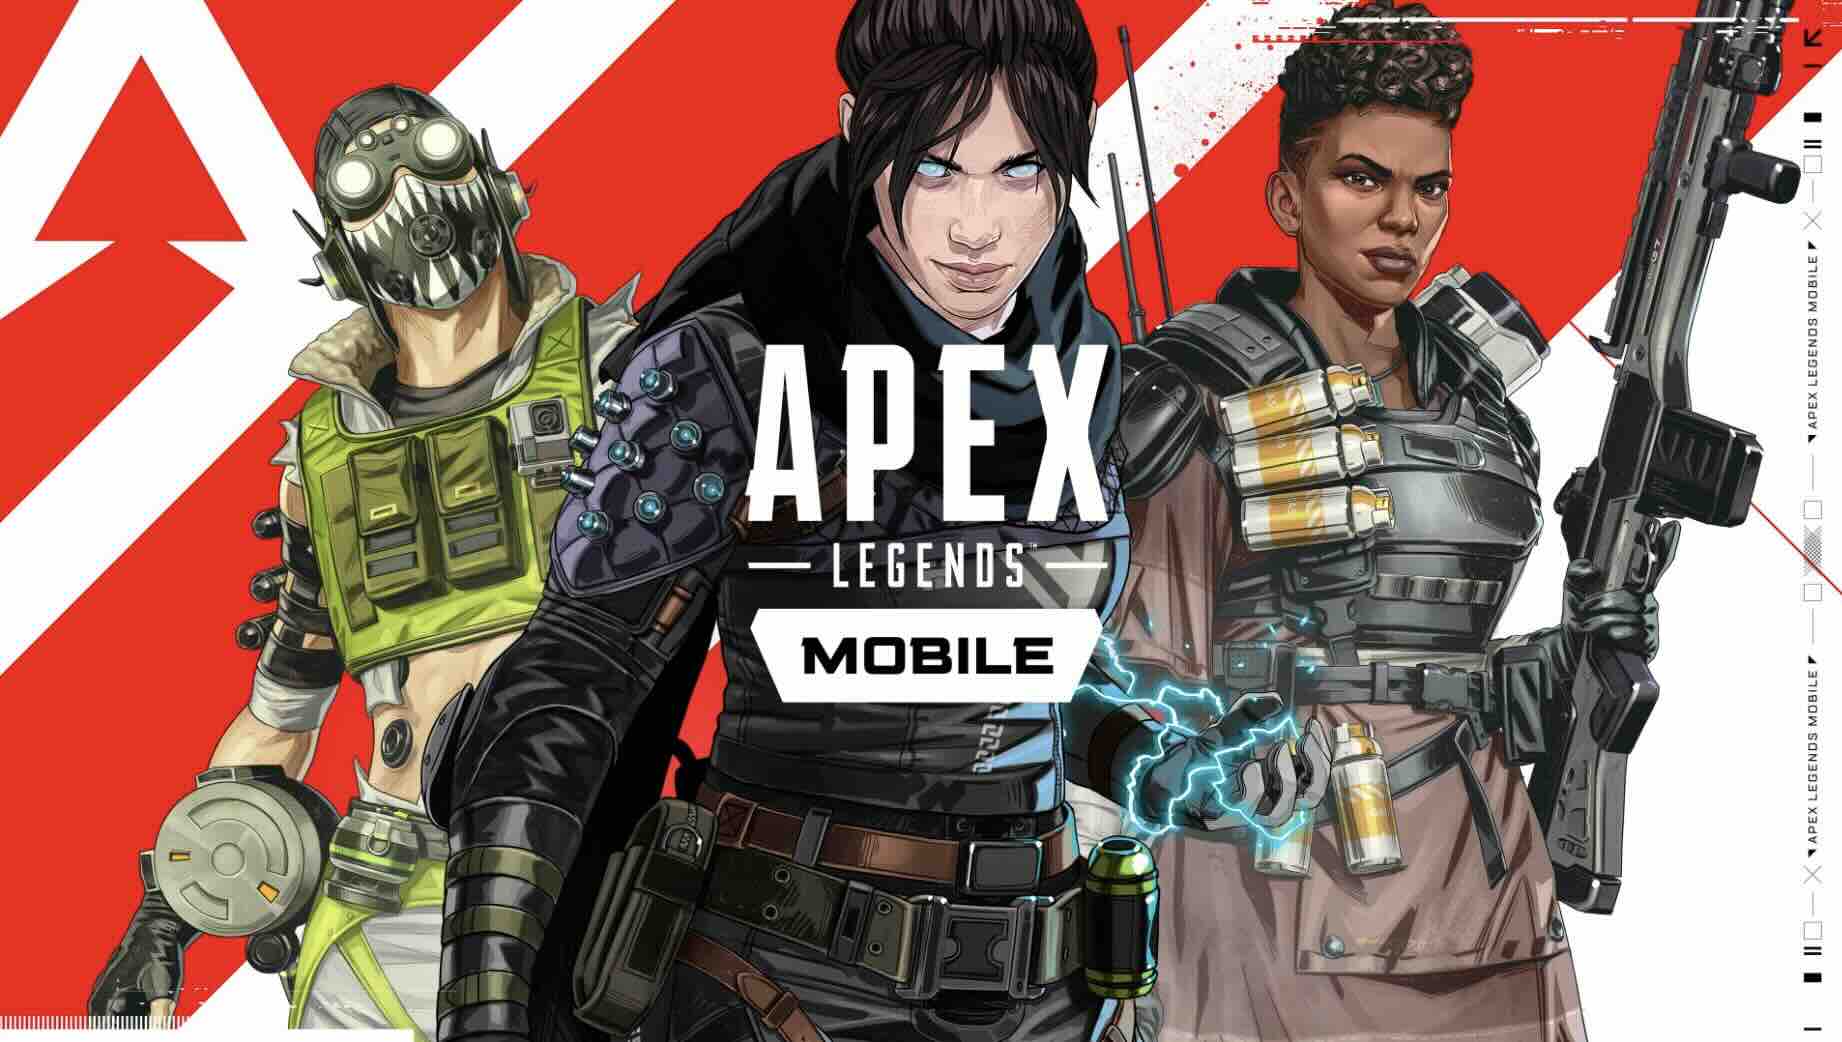 Apex legend mobile